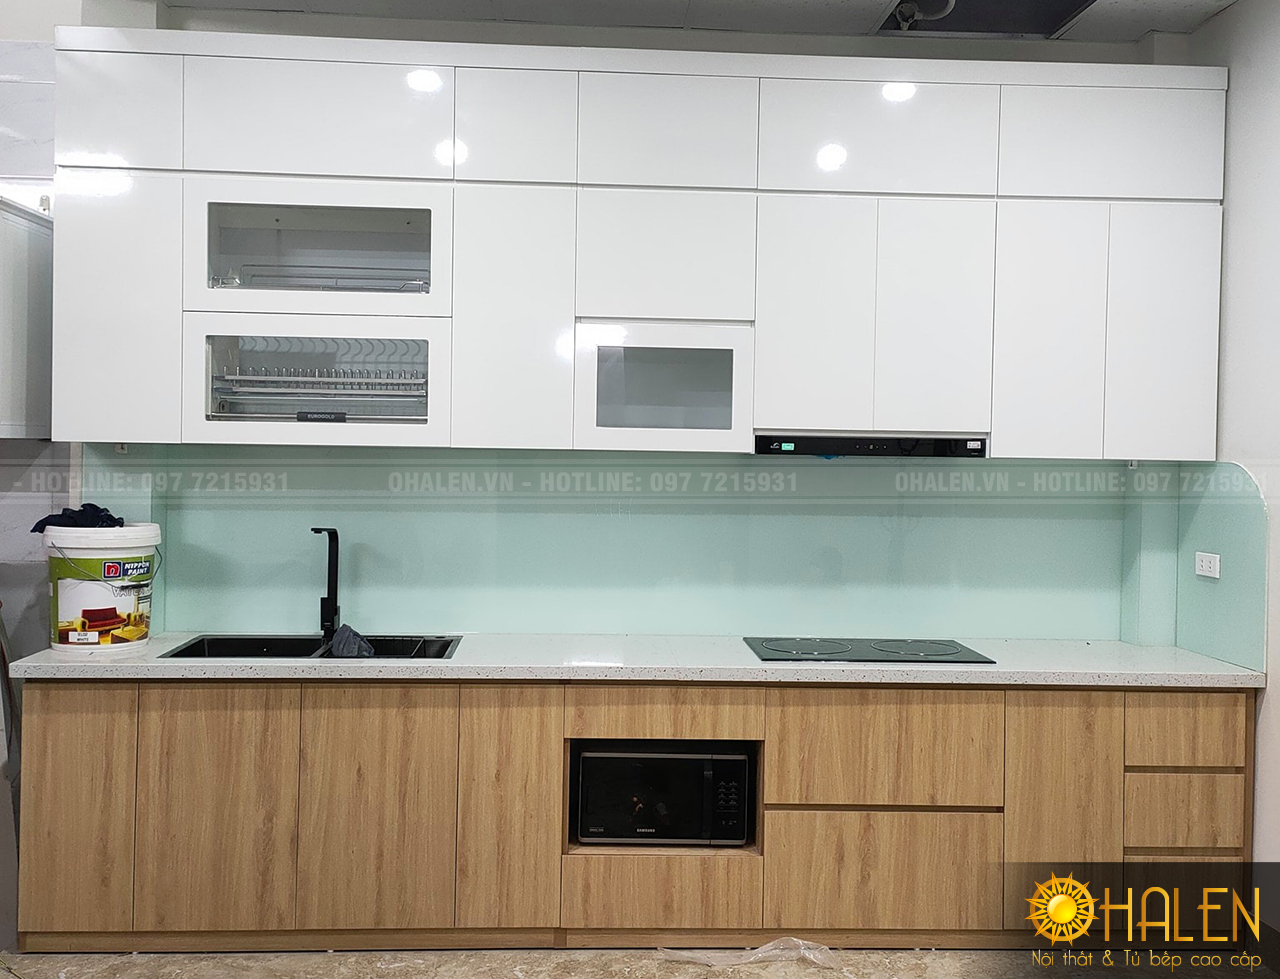 Tủ bếp có màu kính ốp bếp xanh trắng rất nhẹ nhàng, trẻ trung cho gia chủ mệnh Thủy